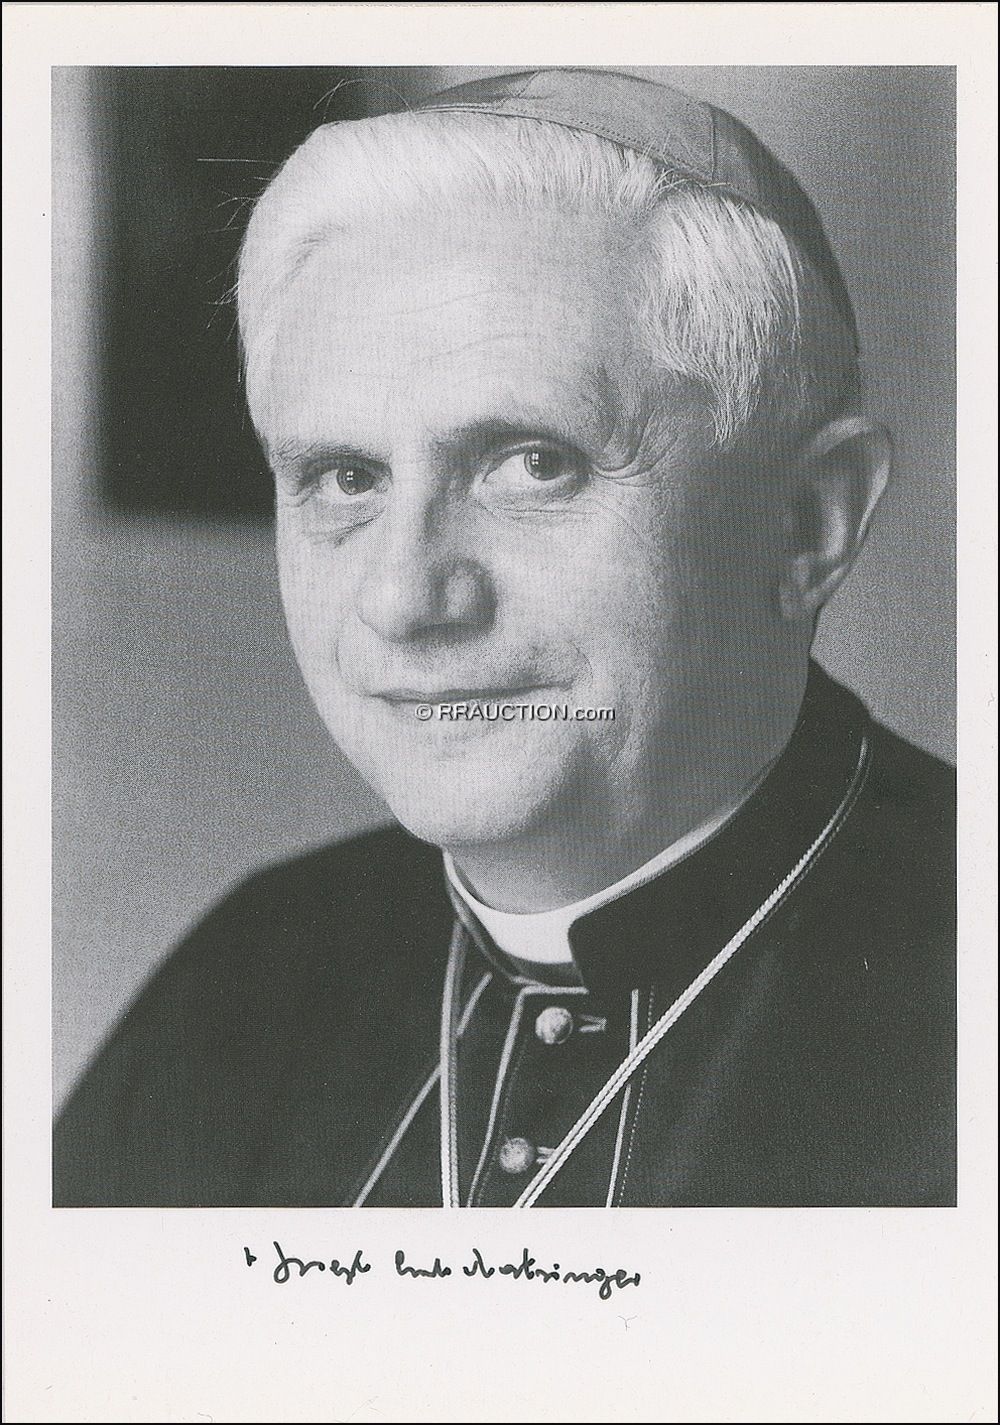 Lot #209 Benedict XVI